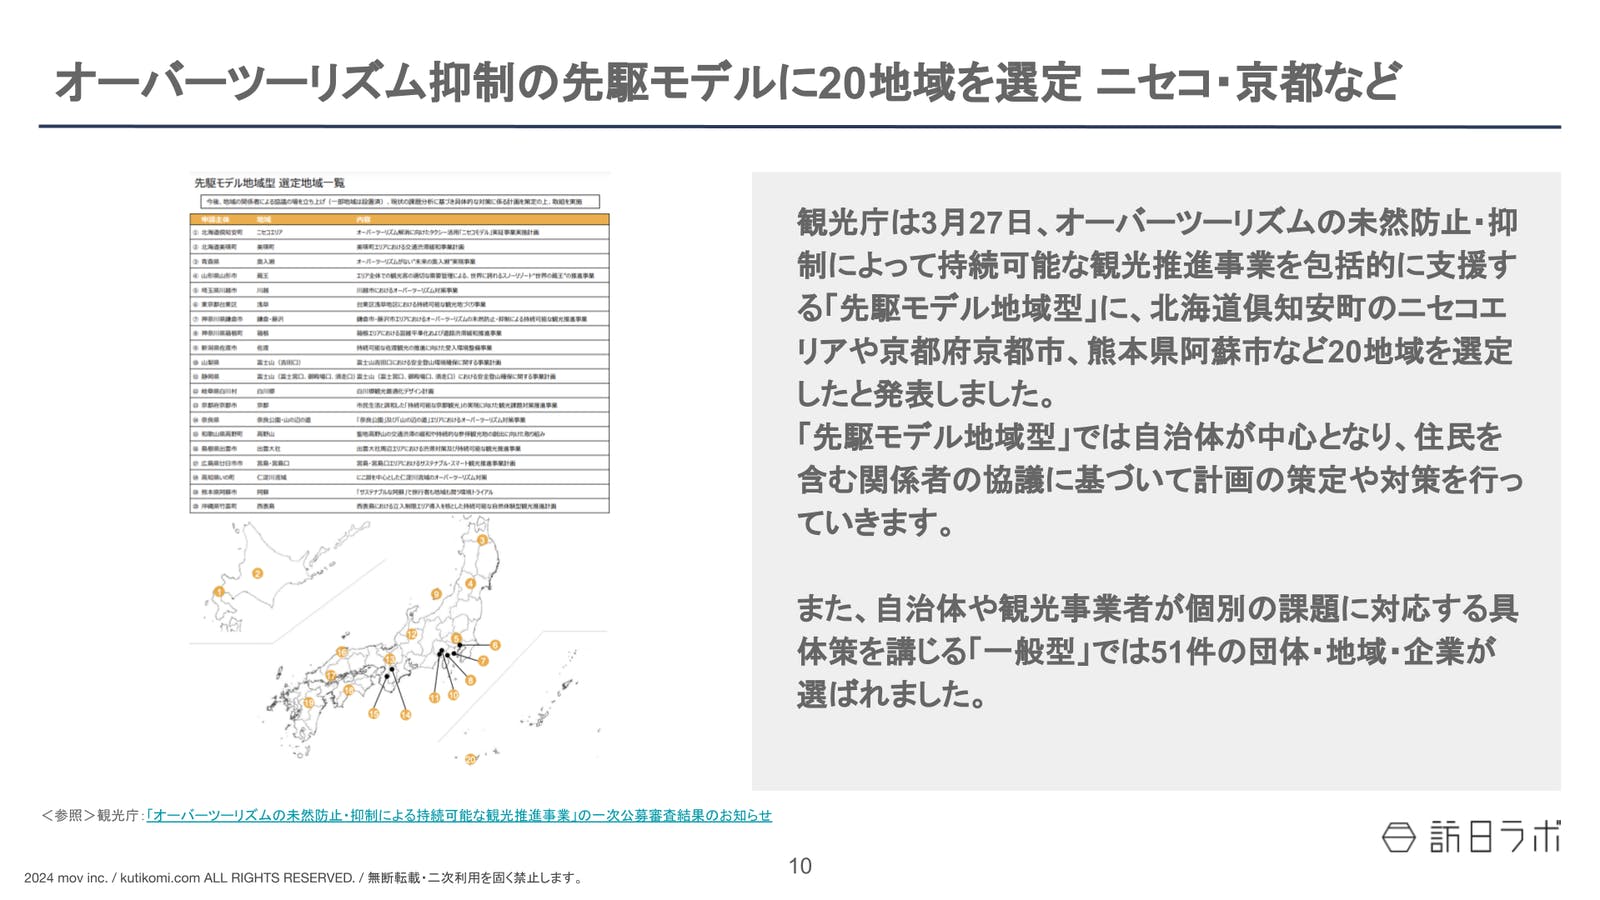 オーバーツーリズム抑制の先駆モデルに20地域を選定 ニセコ・京都など【インバウンド情報まとめ 2024年4月】